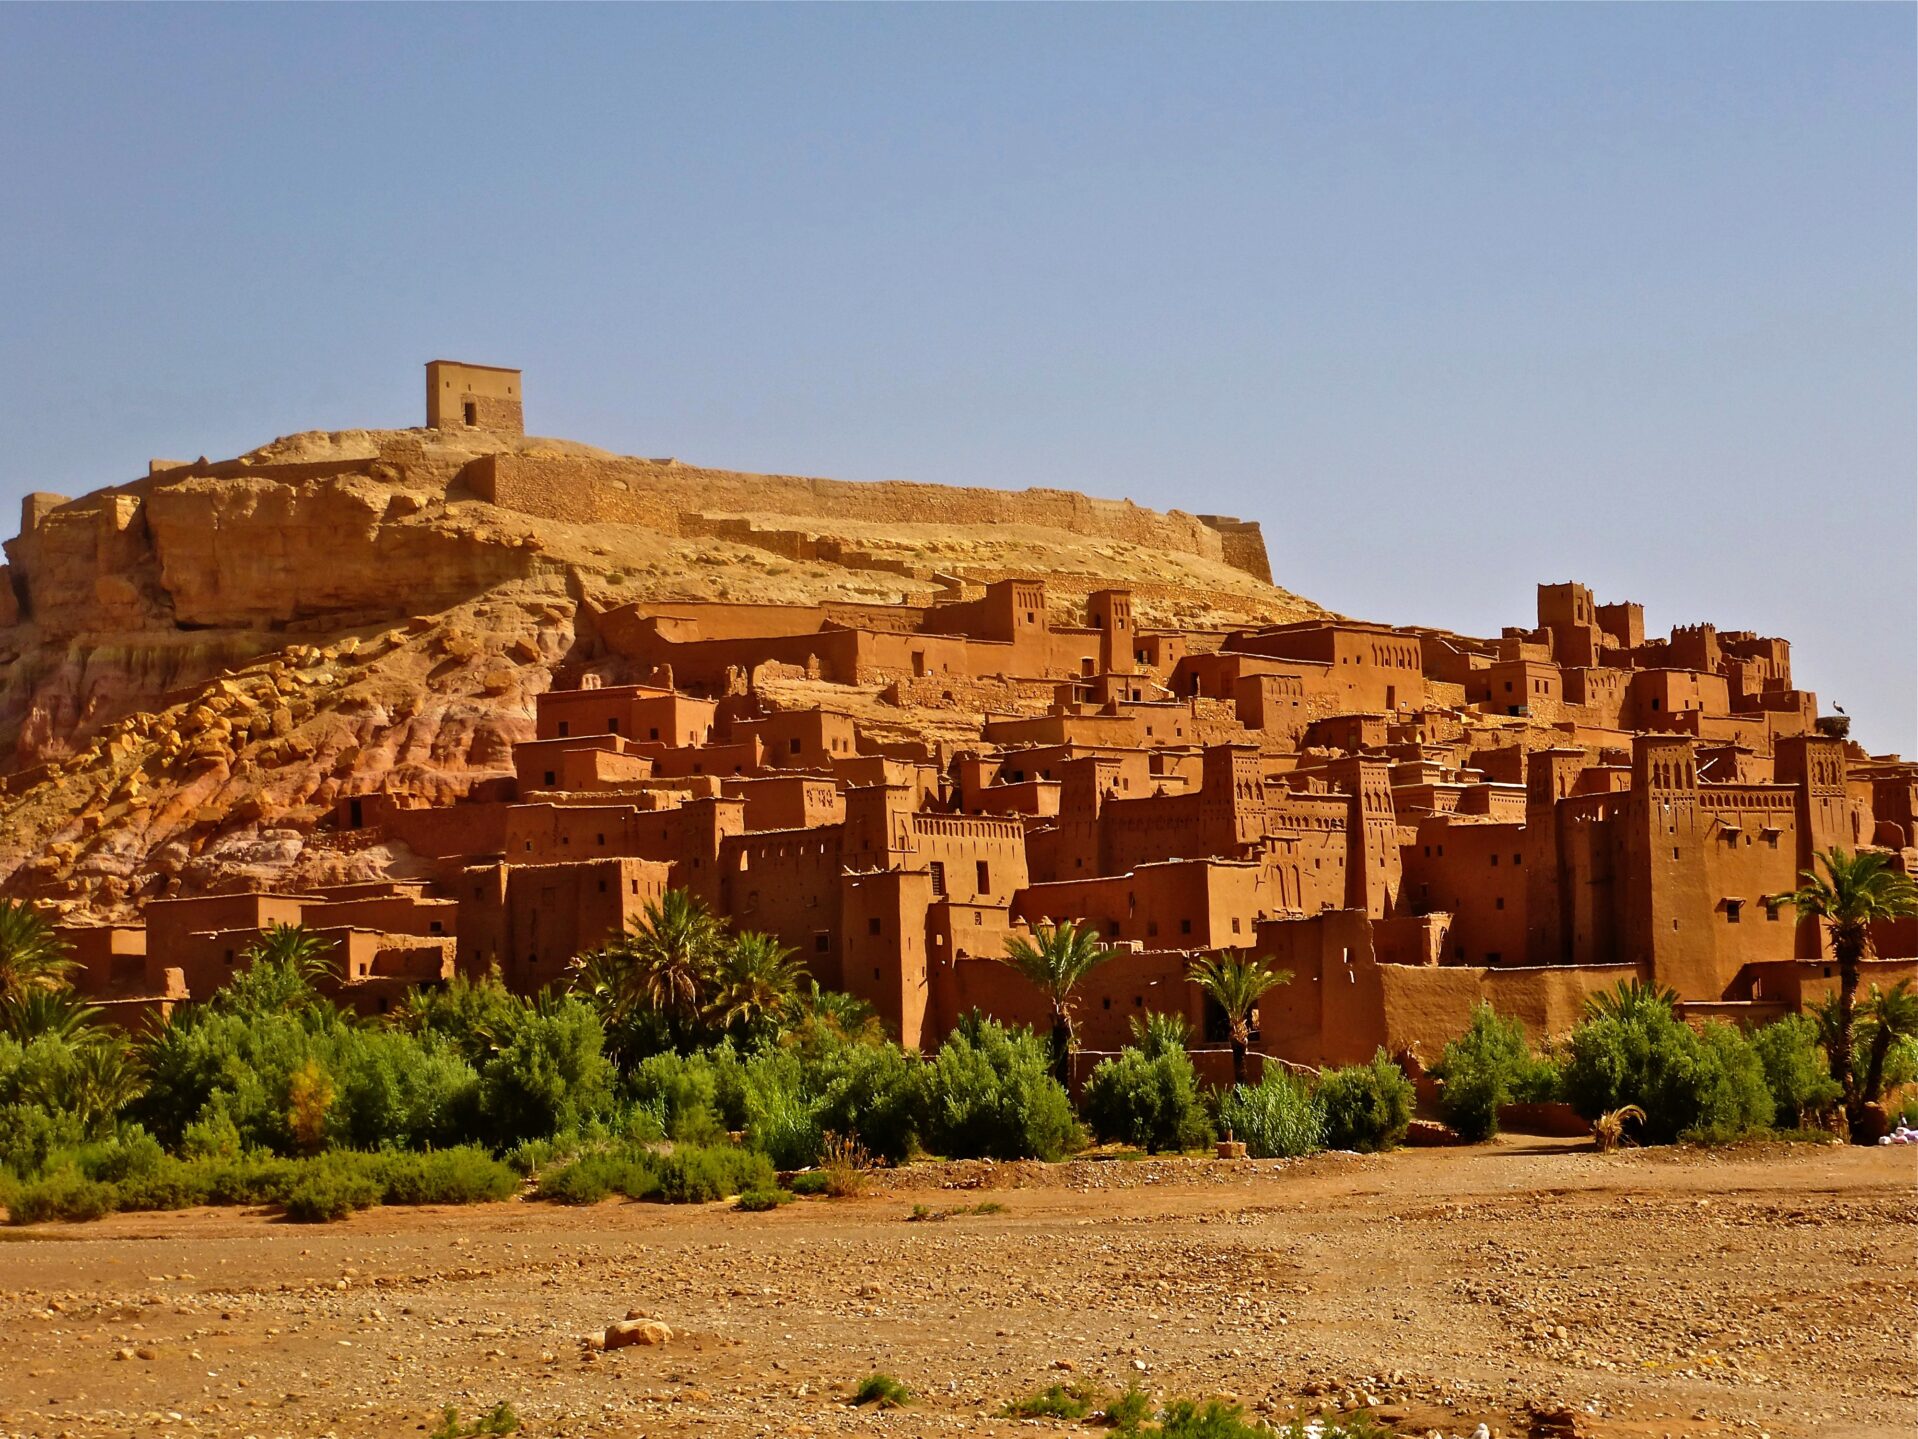 Marokko reisinformatie voor jouw vakantie